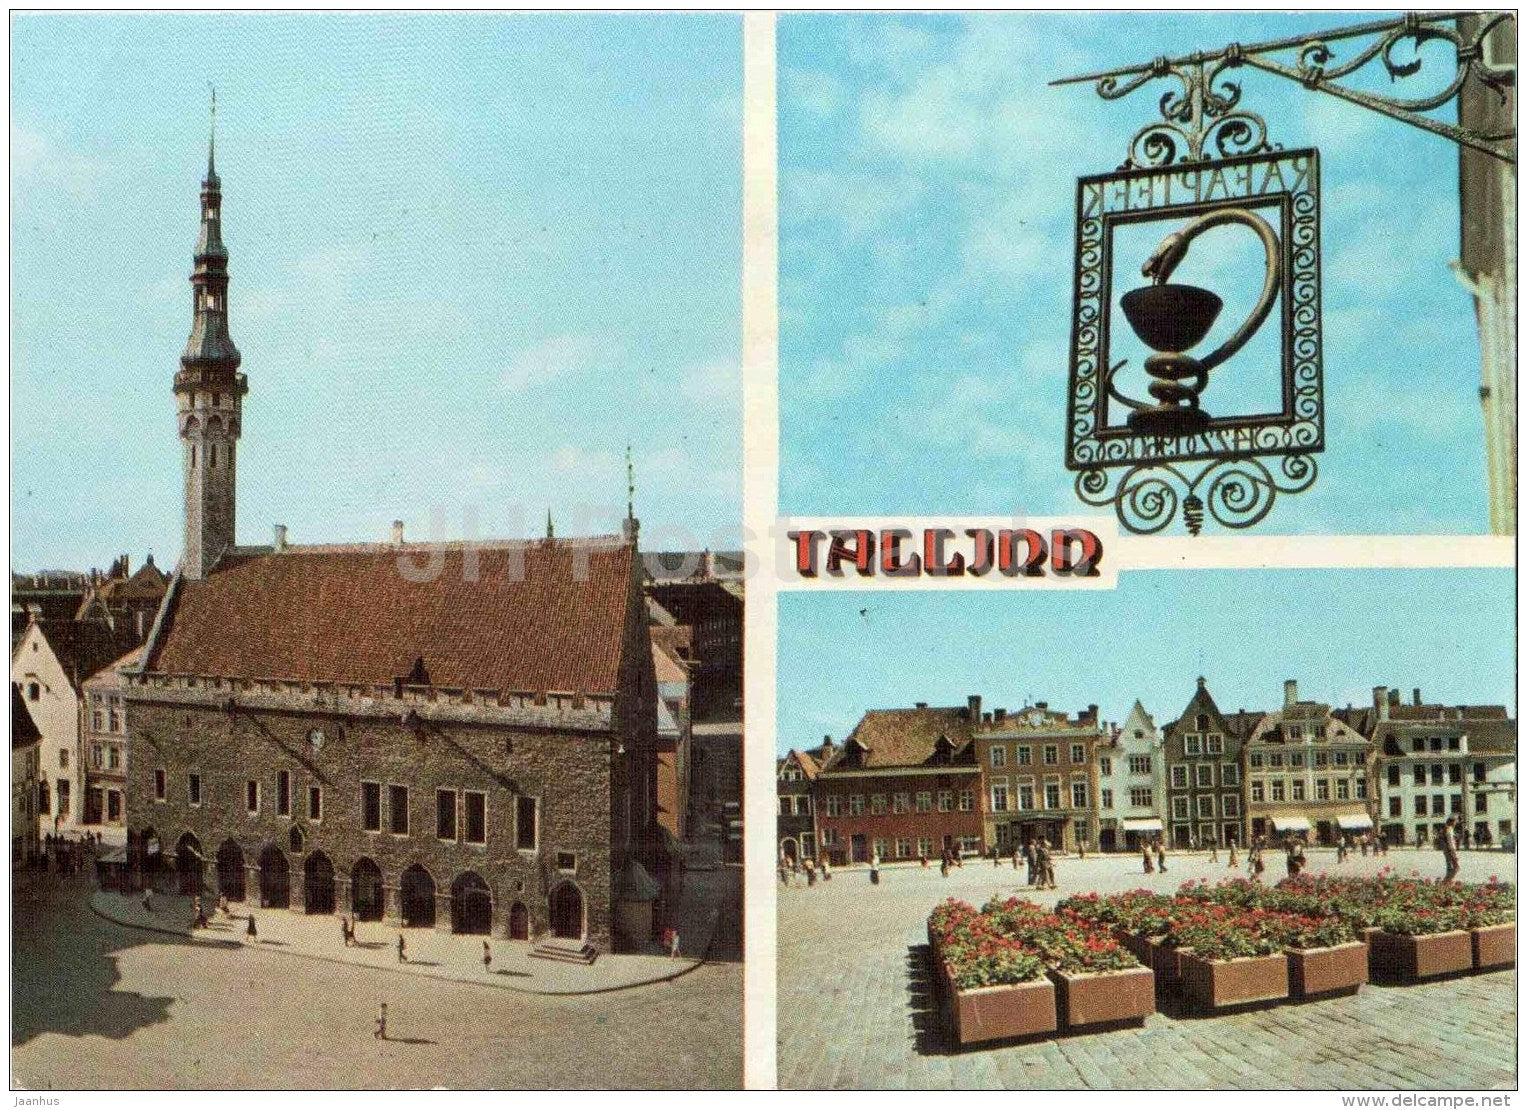 Town Hall Square - Old Town - Tallinn - Intourist - 1986 - Estonia USSR - unused - JH Postcards